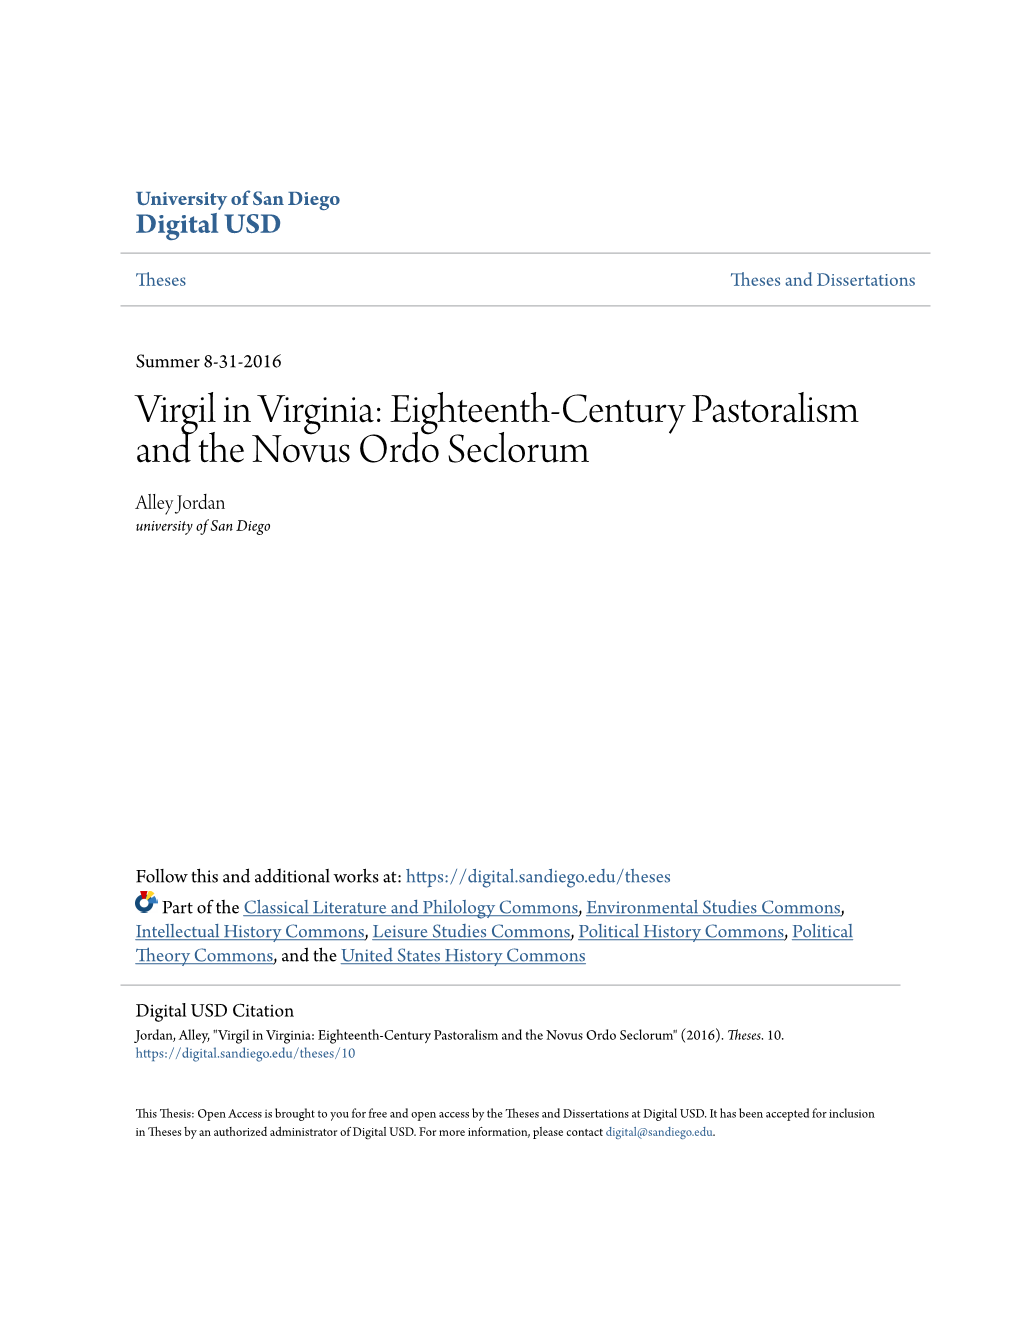 Virgil in Virginia: Eighteenth-Century Pastoralism and the Novus Ordo Seclorum Alley Jordan University of San Diego